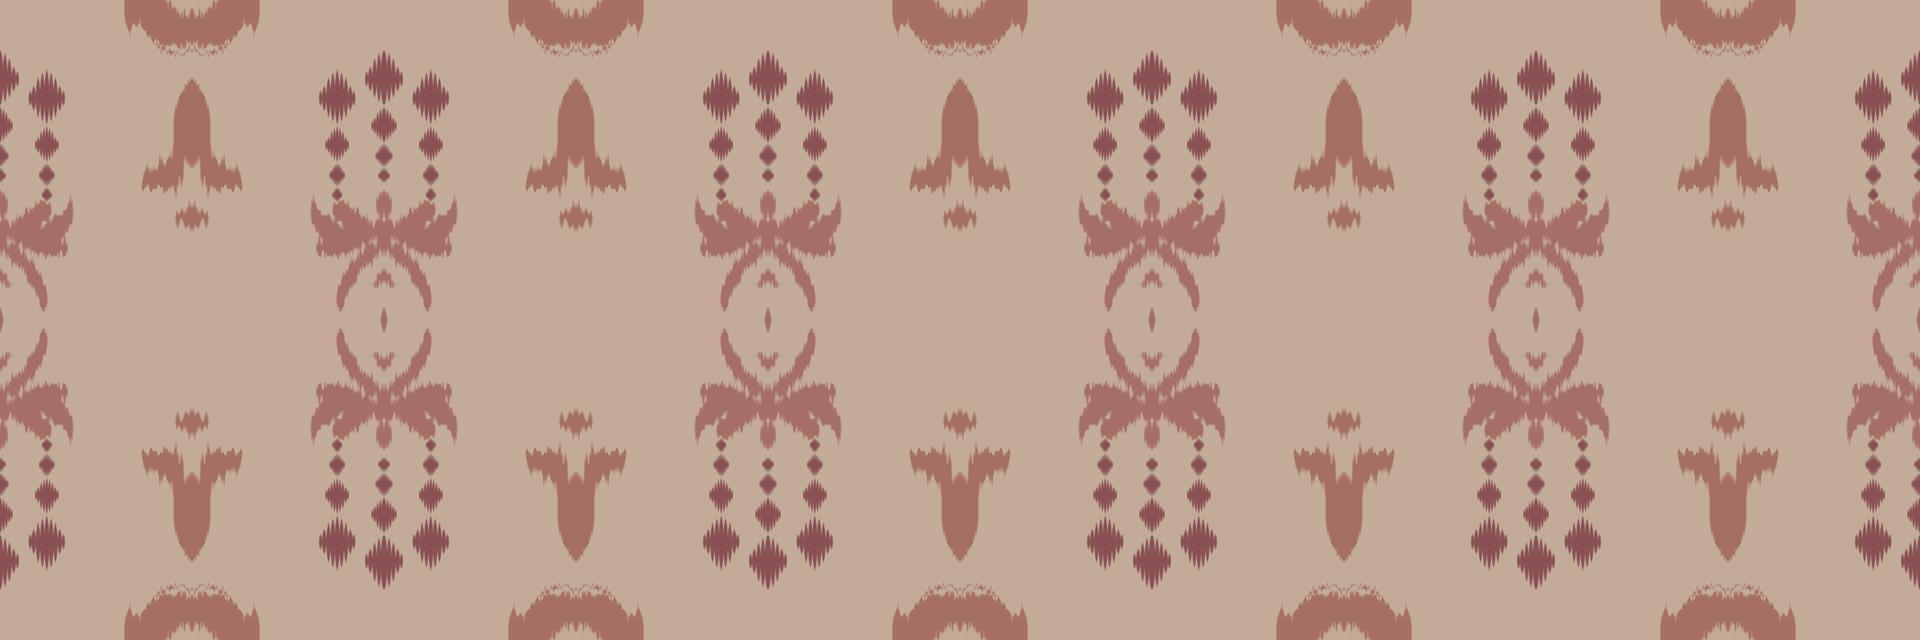 motivo africano ikat batik tessile senza soluzione di continuità modello digitale vettore design per Stampa saree Kurti Borneo tessuto confine spazzola simboli campioni cotone